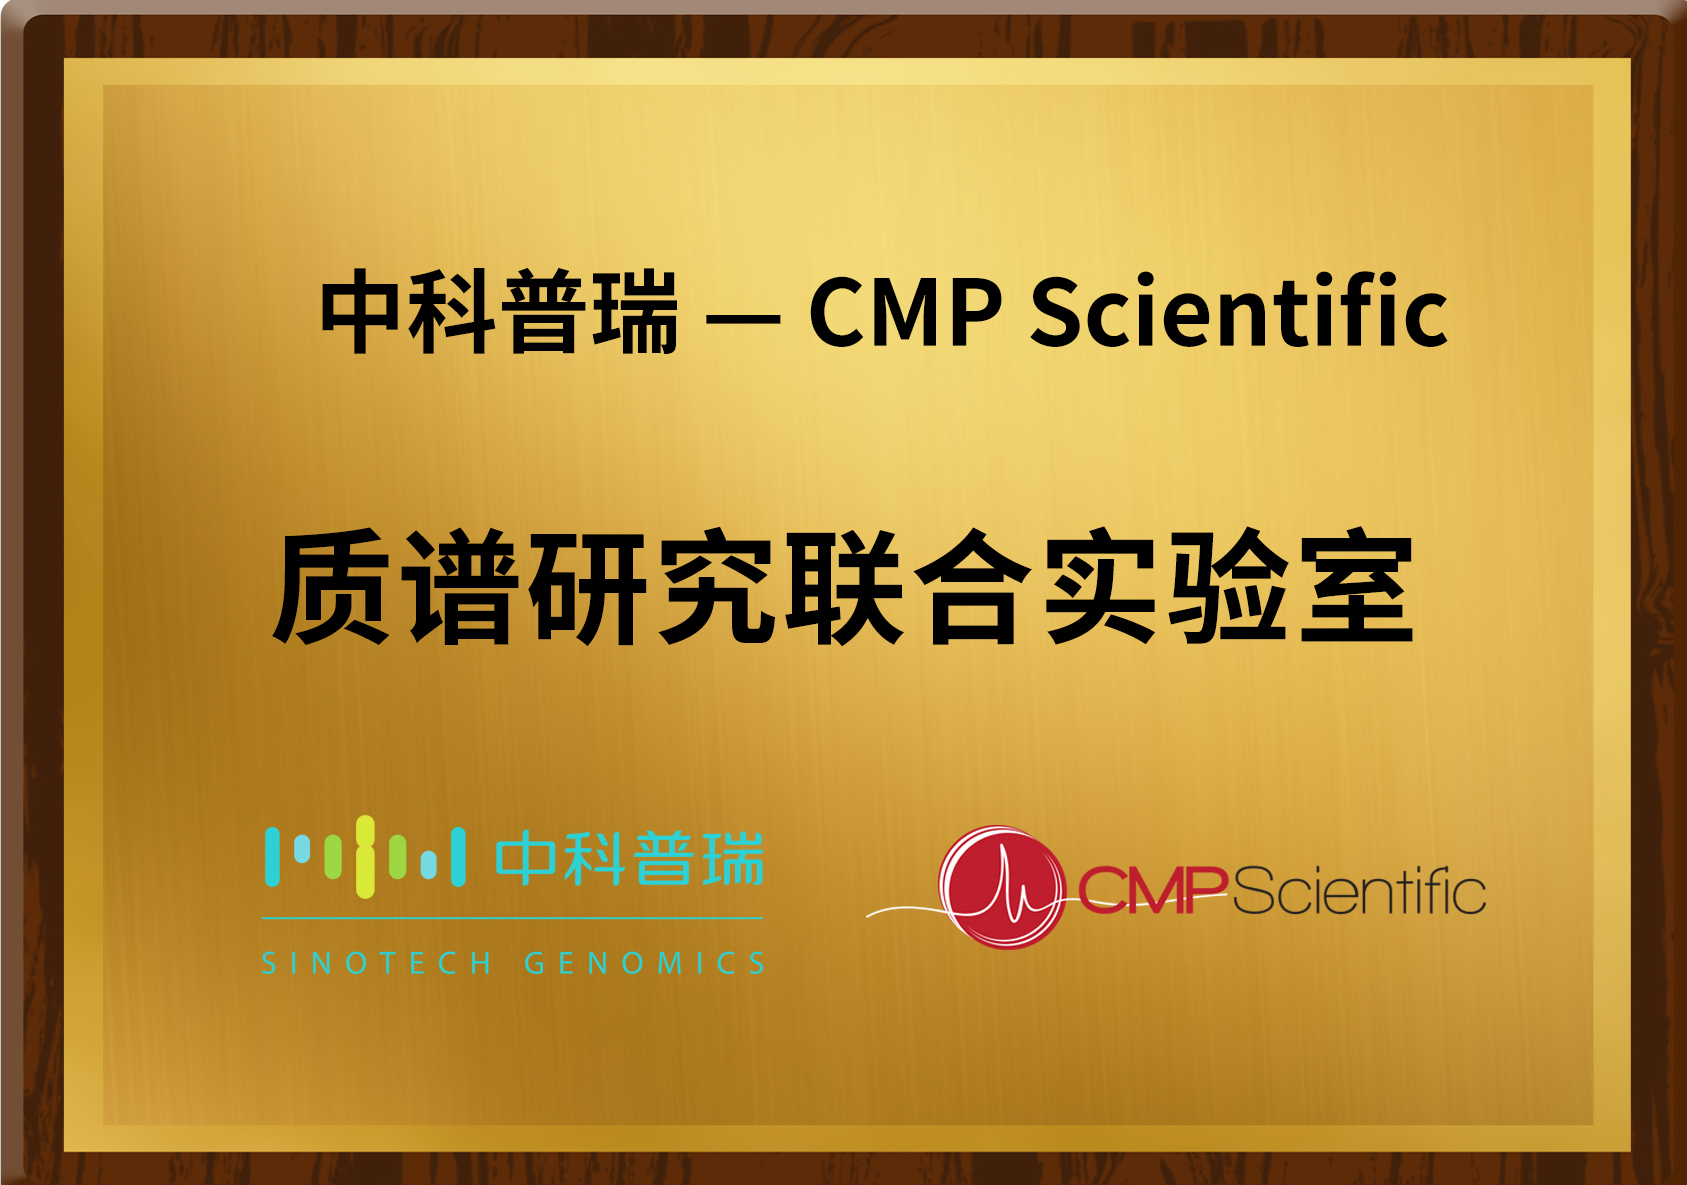 中科普瑞与永道致远旗下CMP质谱科技公司达成基于CE-MS技术的战略合作